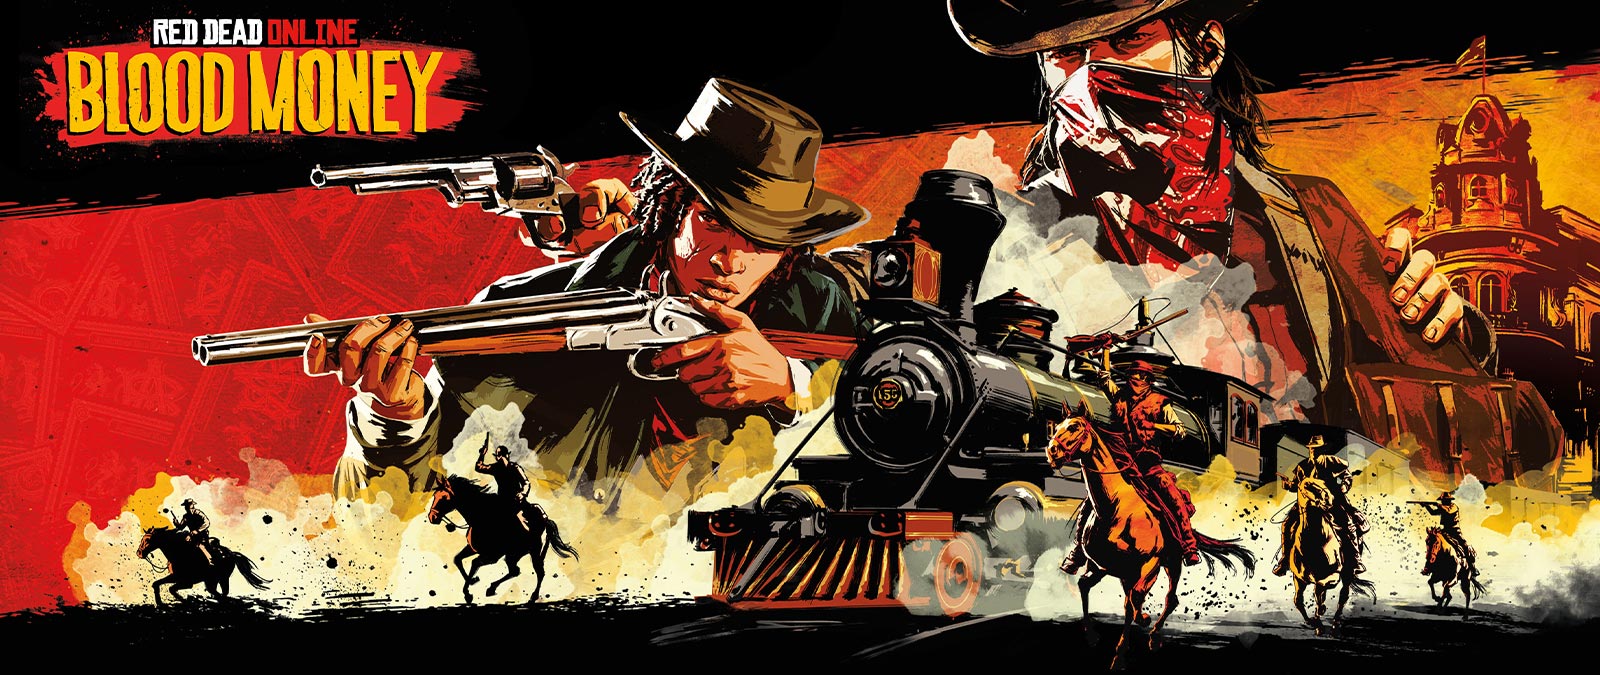 Red Dead Online: Blood Money, Bandits armados en un ataque a caballo un tren